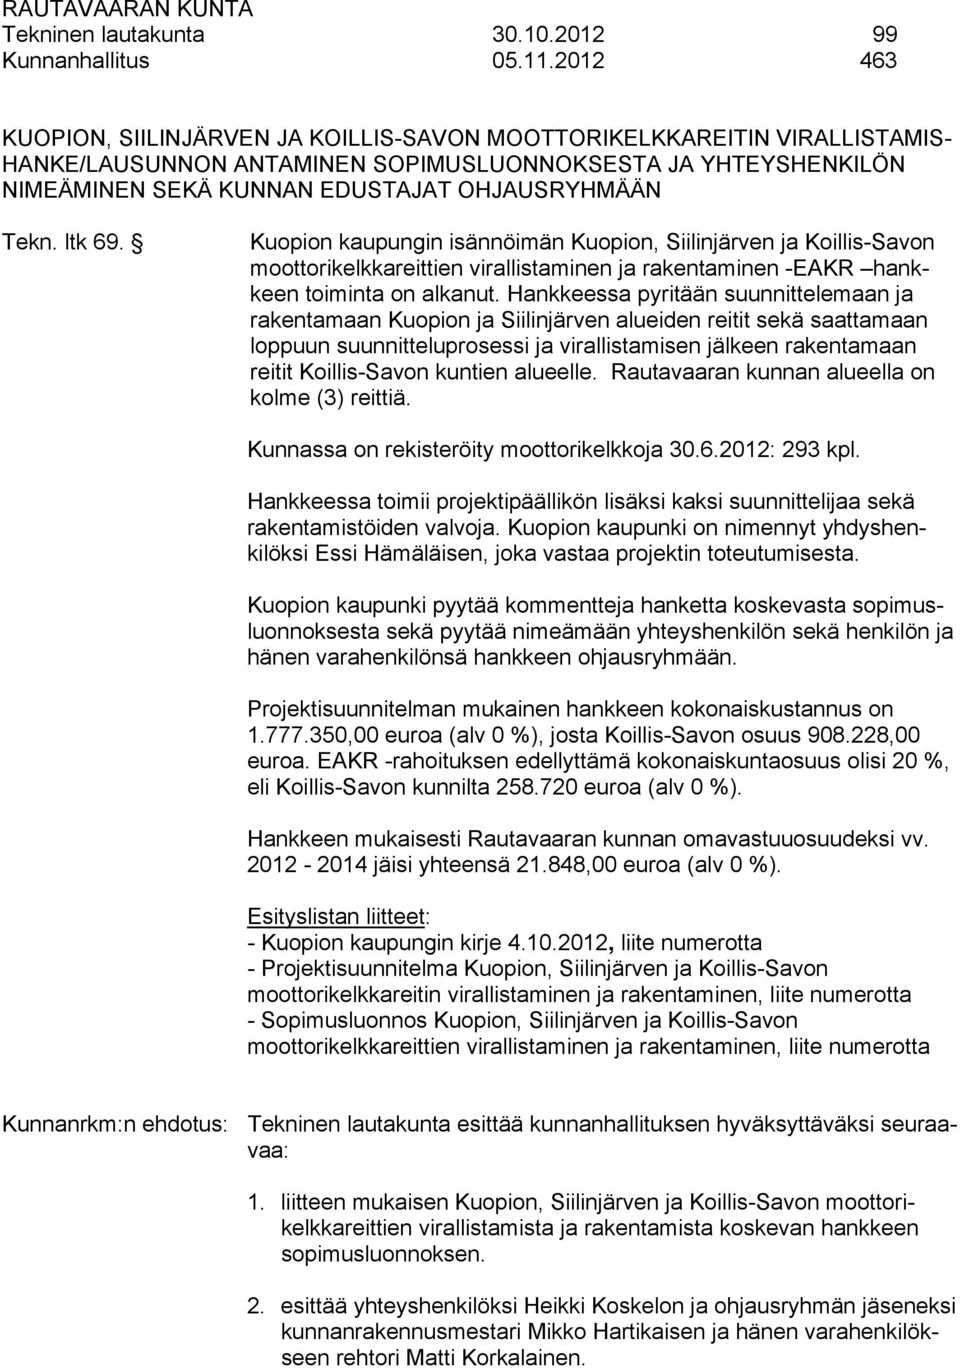 ltk 69. Kuopion kaupungin isännöimän Kuopion, Siilinjärven ja Koillis-Savon moottorikelkkareittien virallistaminen ja rakentaminen -EAKR hankkeen toiminta on alkanut.